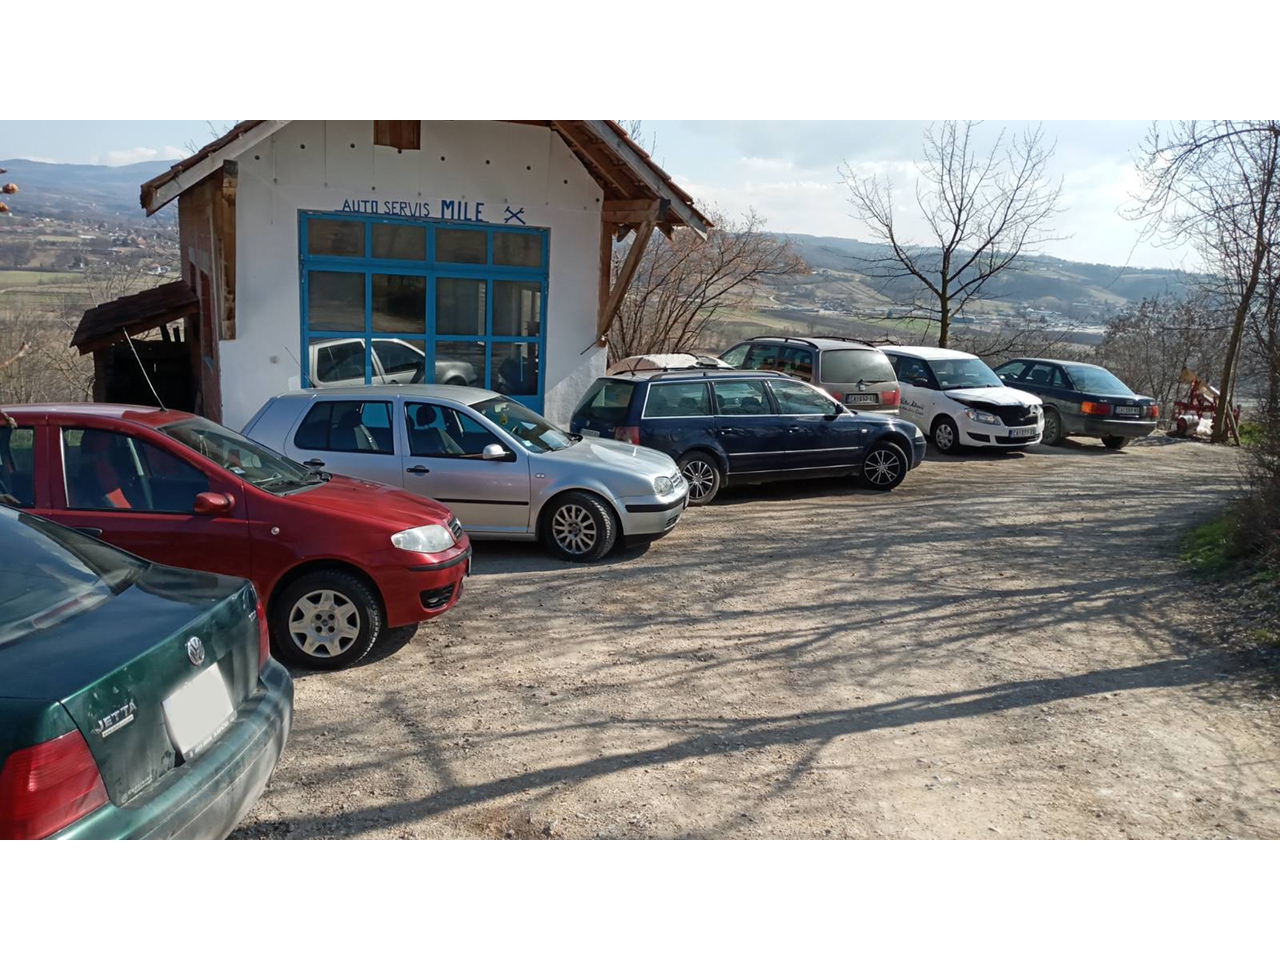 CAR SERVICE MILE Auto services Cacak - Photo 1